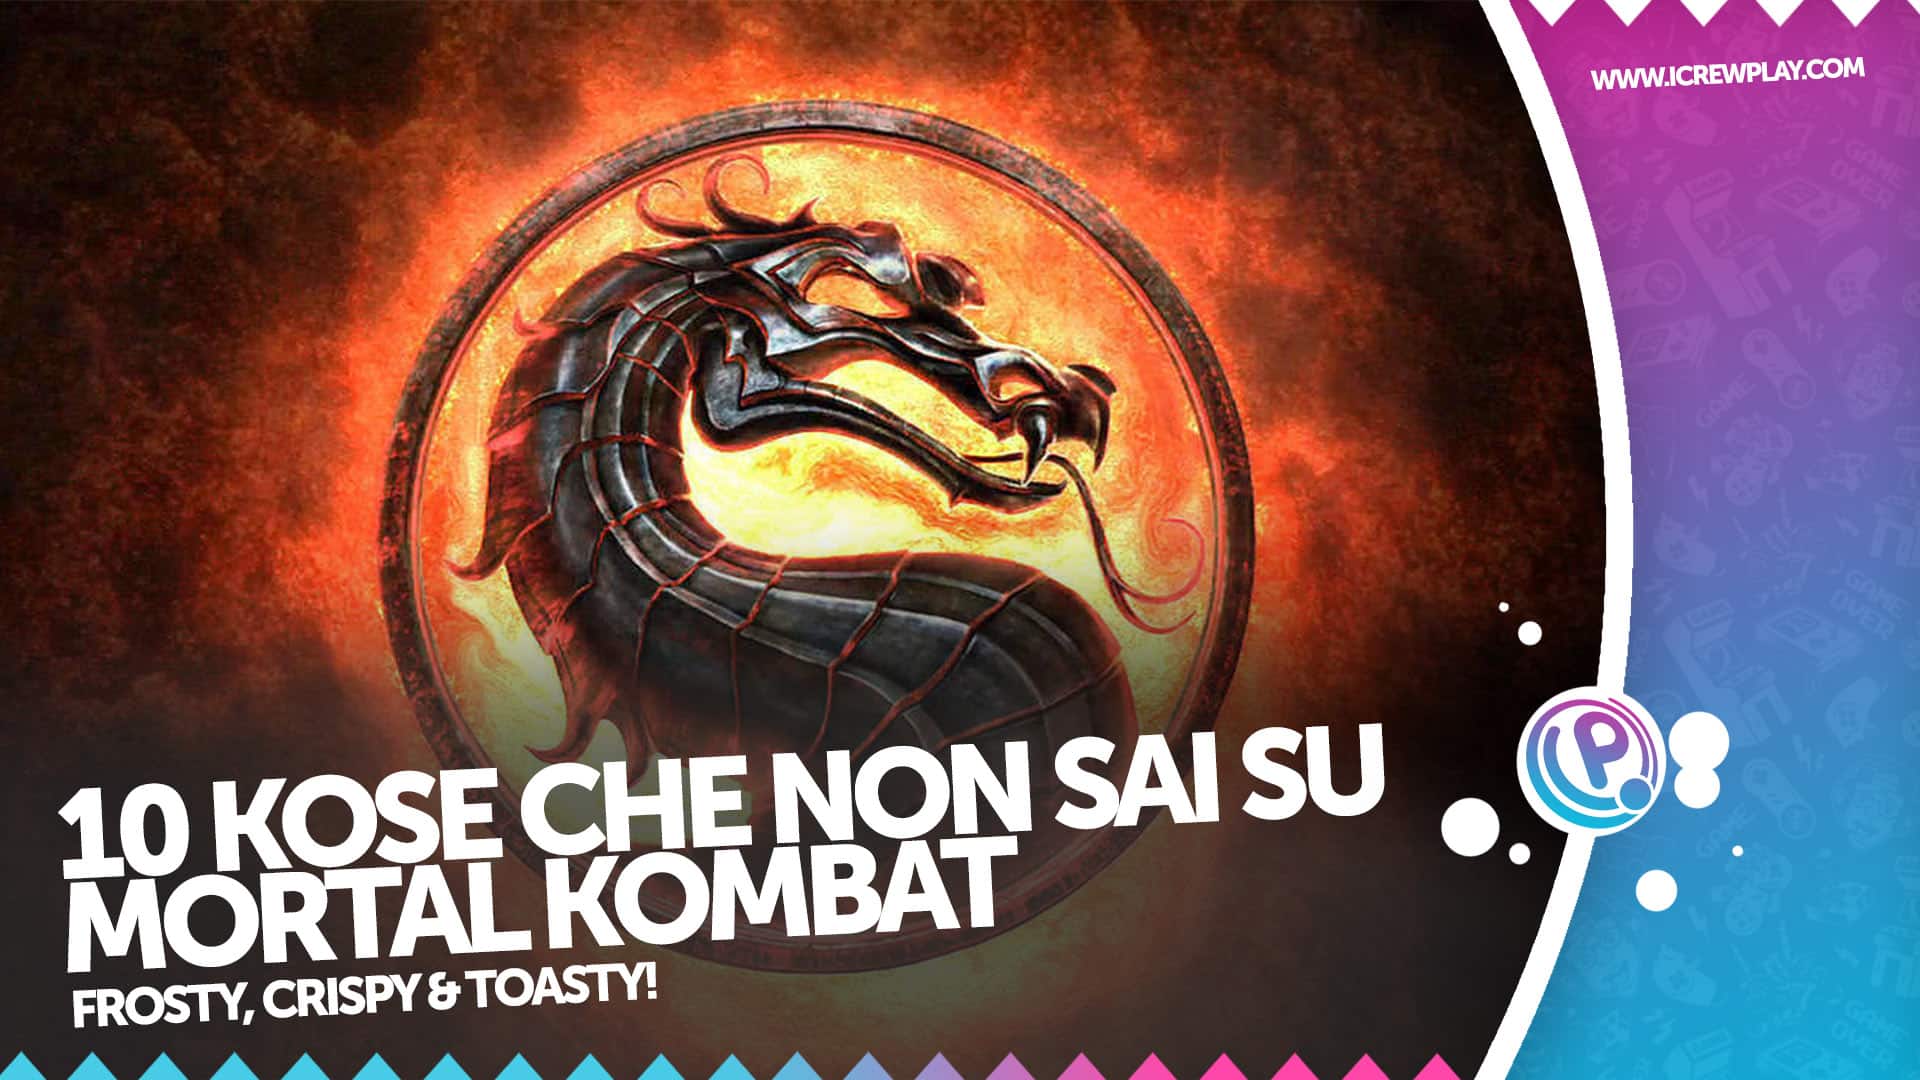 10 cose che forse non sai su Mortal Kombat 4